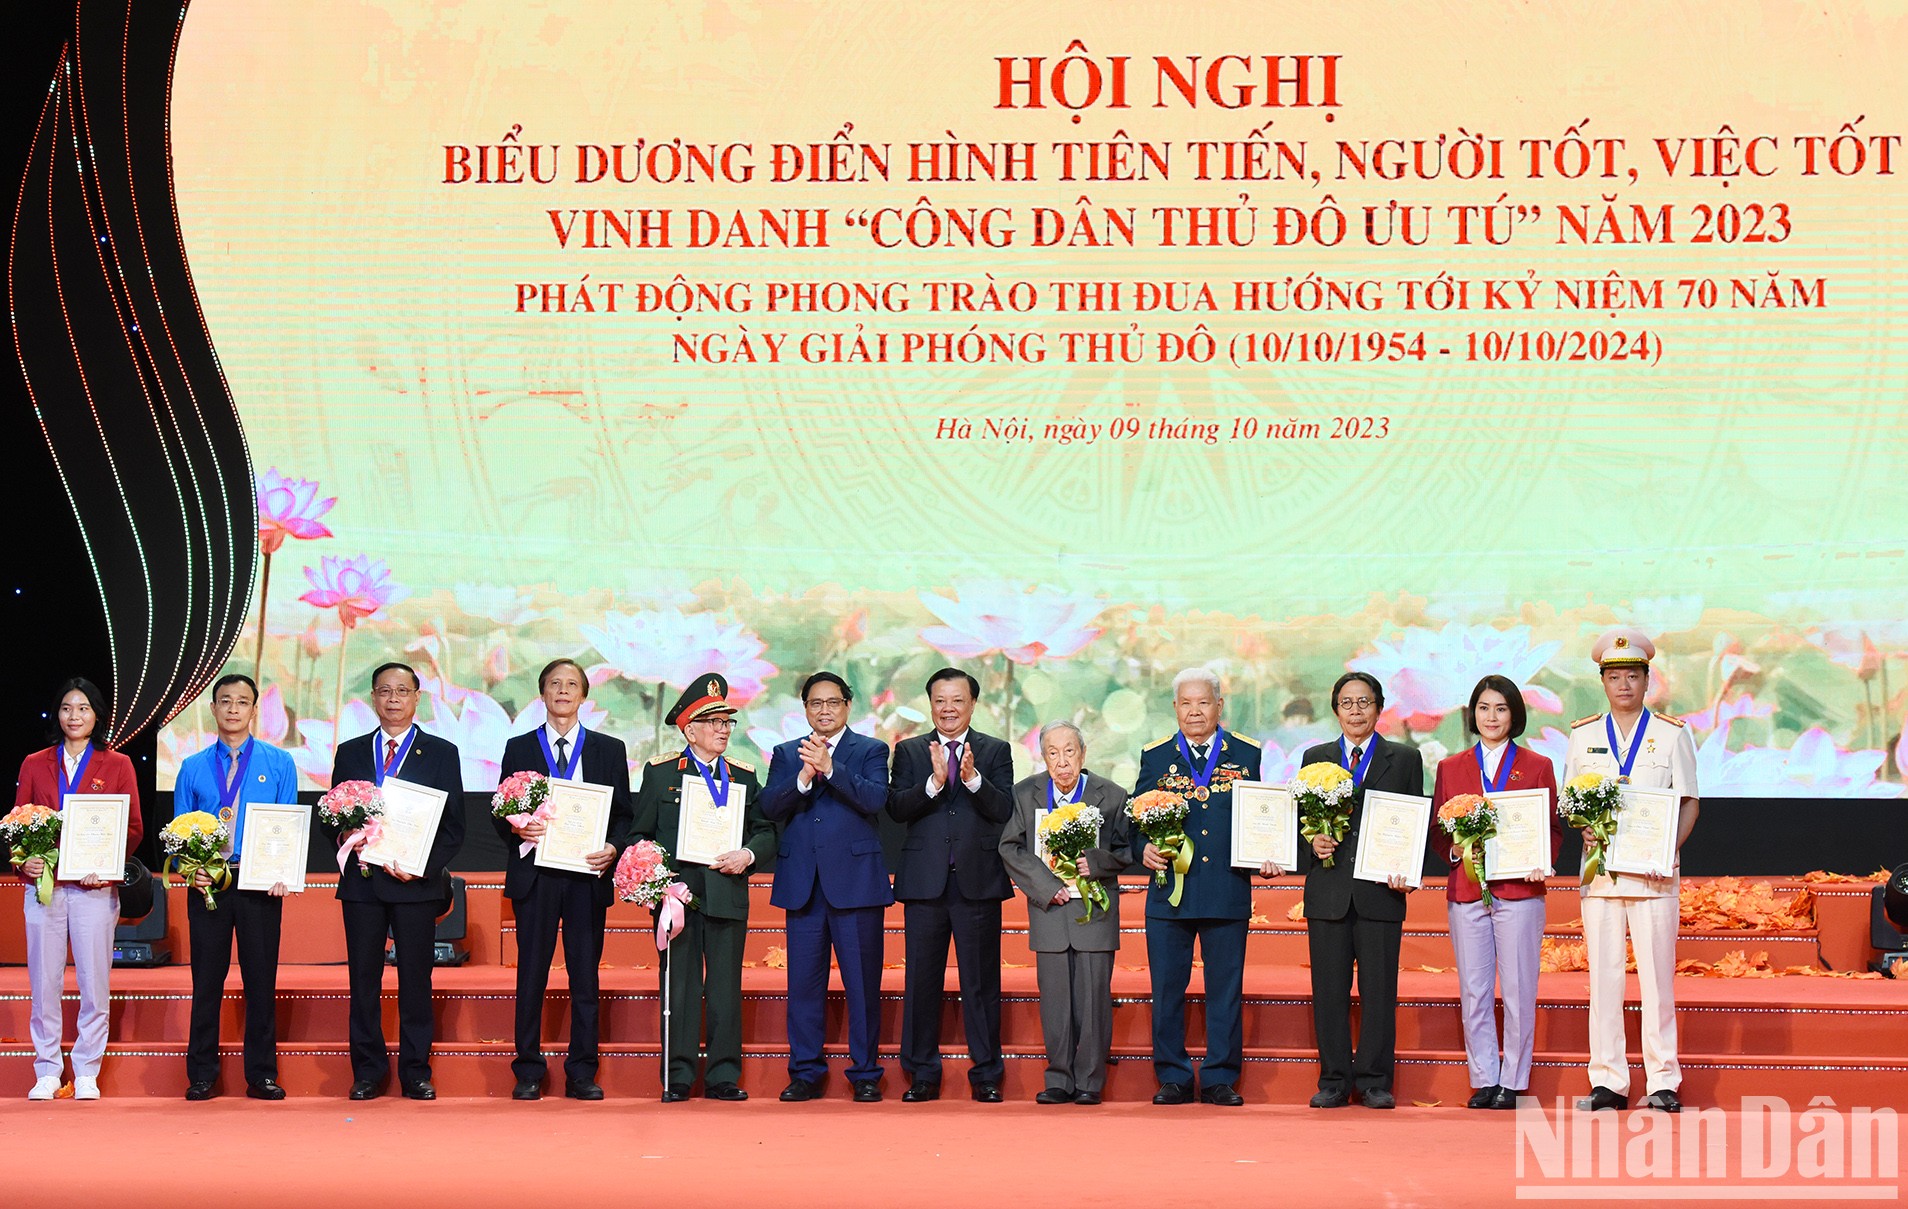 [Foto] Premier vietnamita asiste al acto de honor a ciudadanos destacados de la capital 